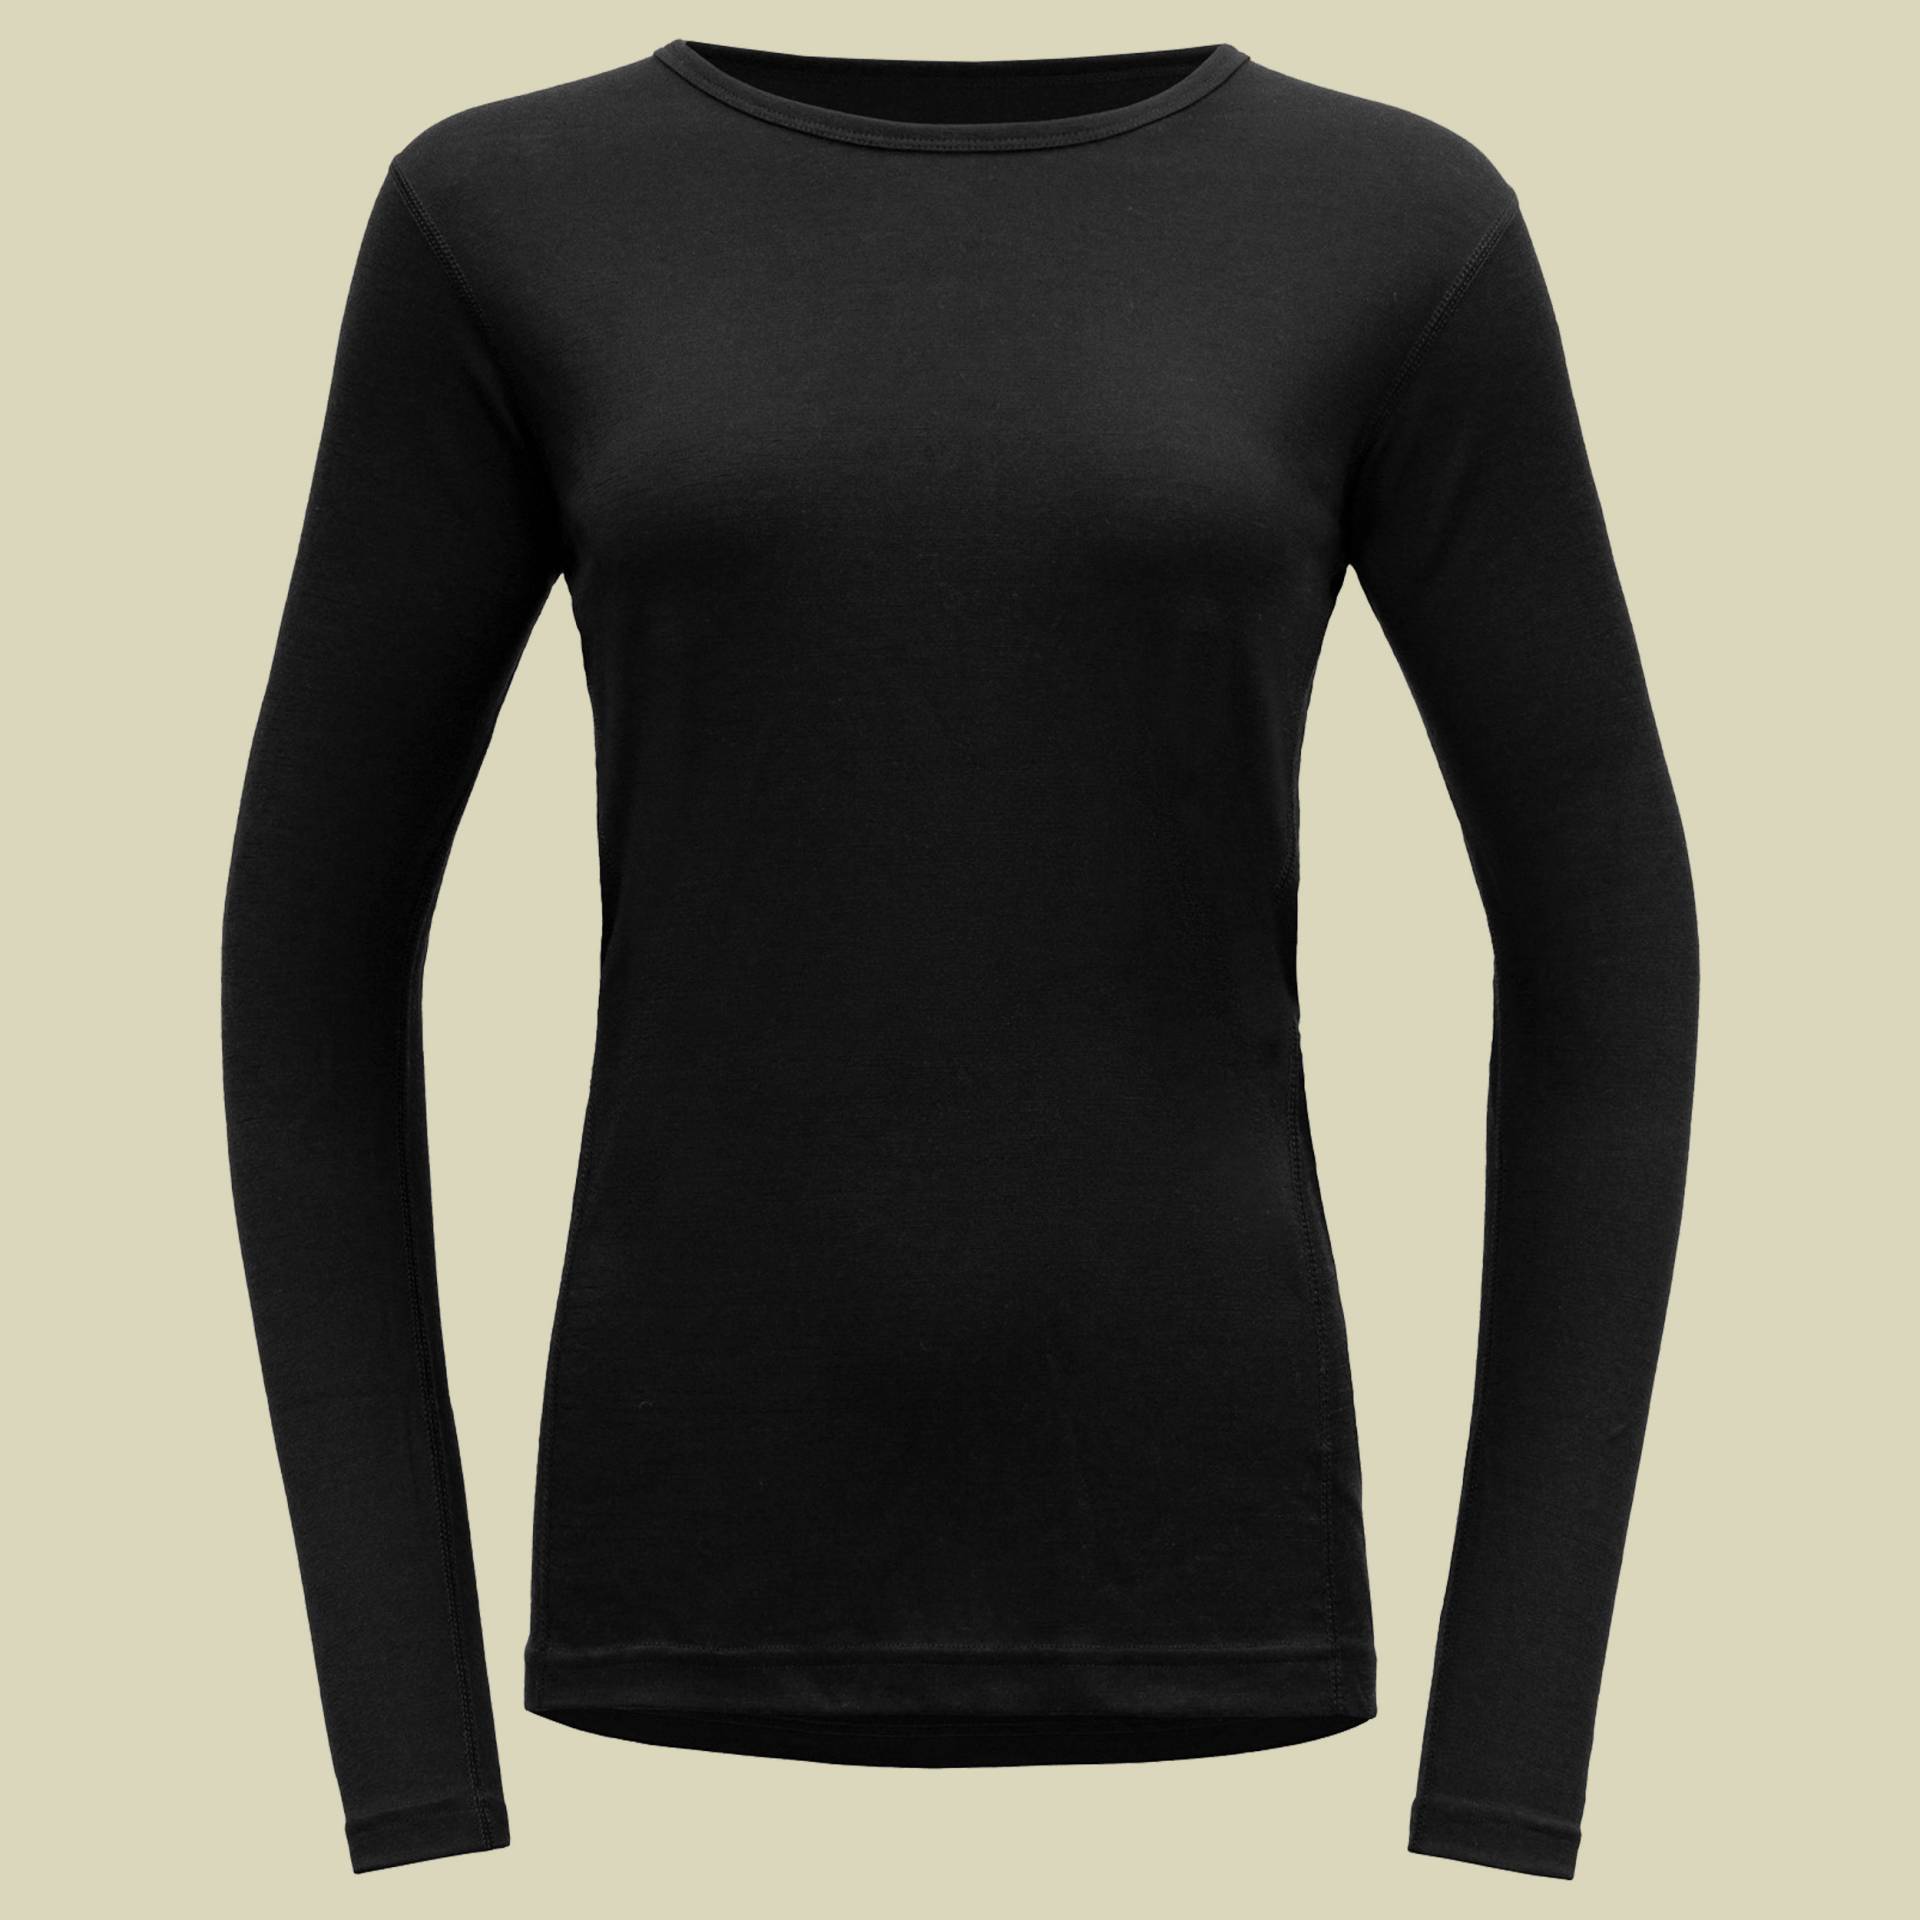 Jakta Merino 200 Shirt Woman Größe L  Farbe black von Devold